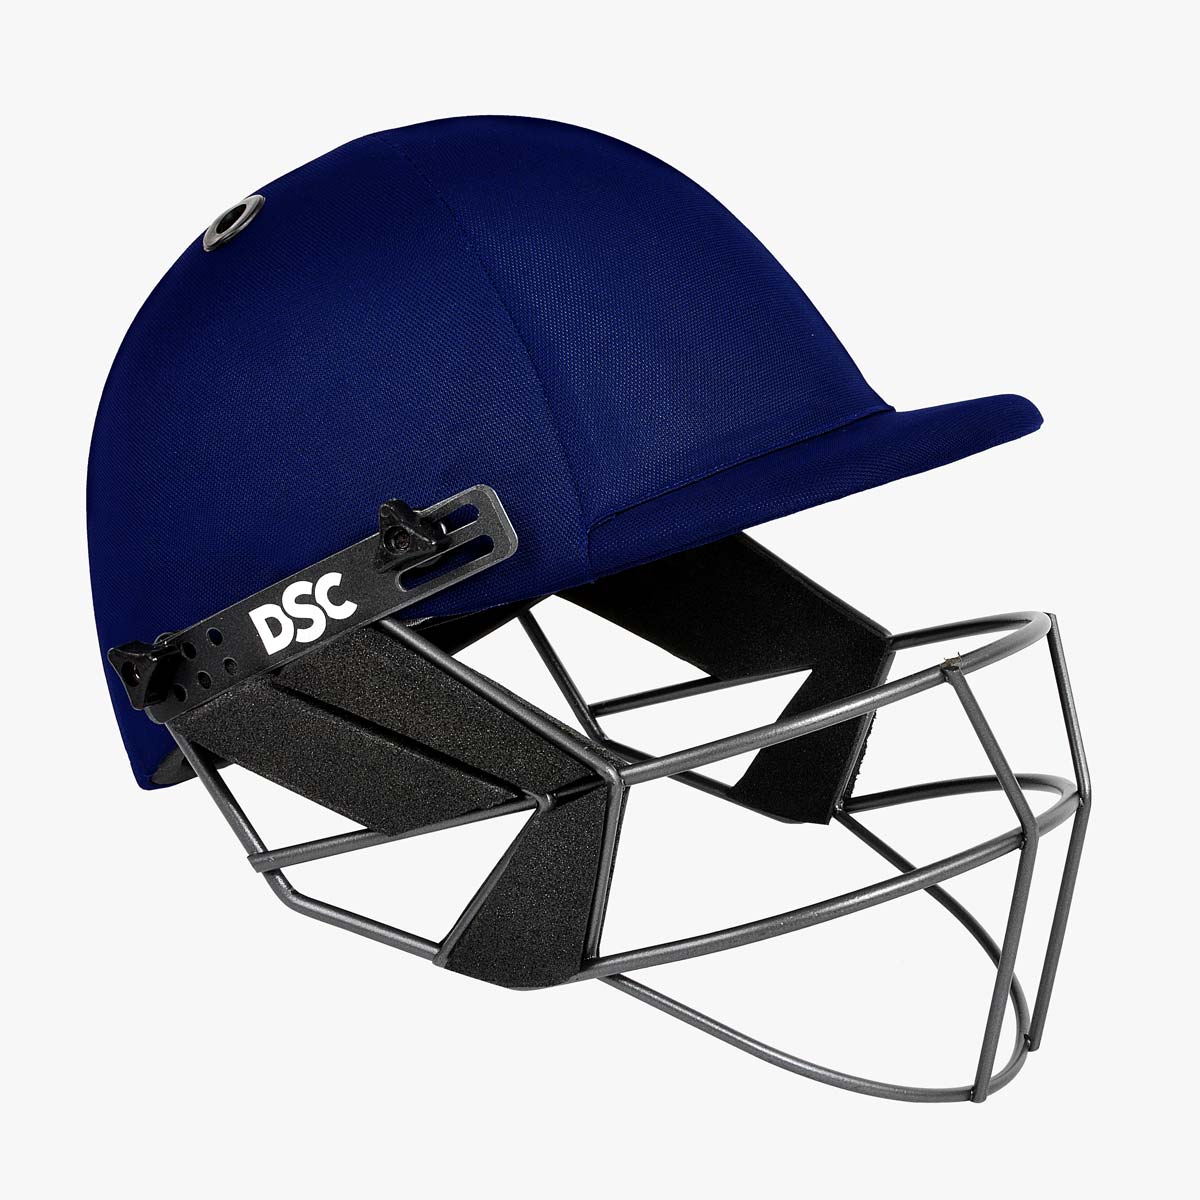 fort-44-cricket-helmet-navy-3.jpg